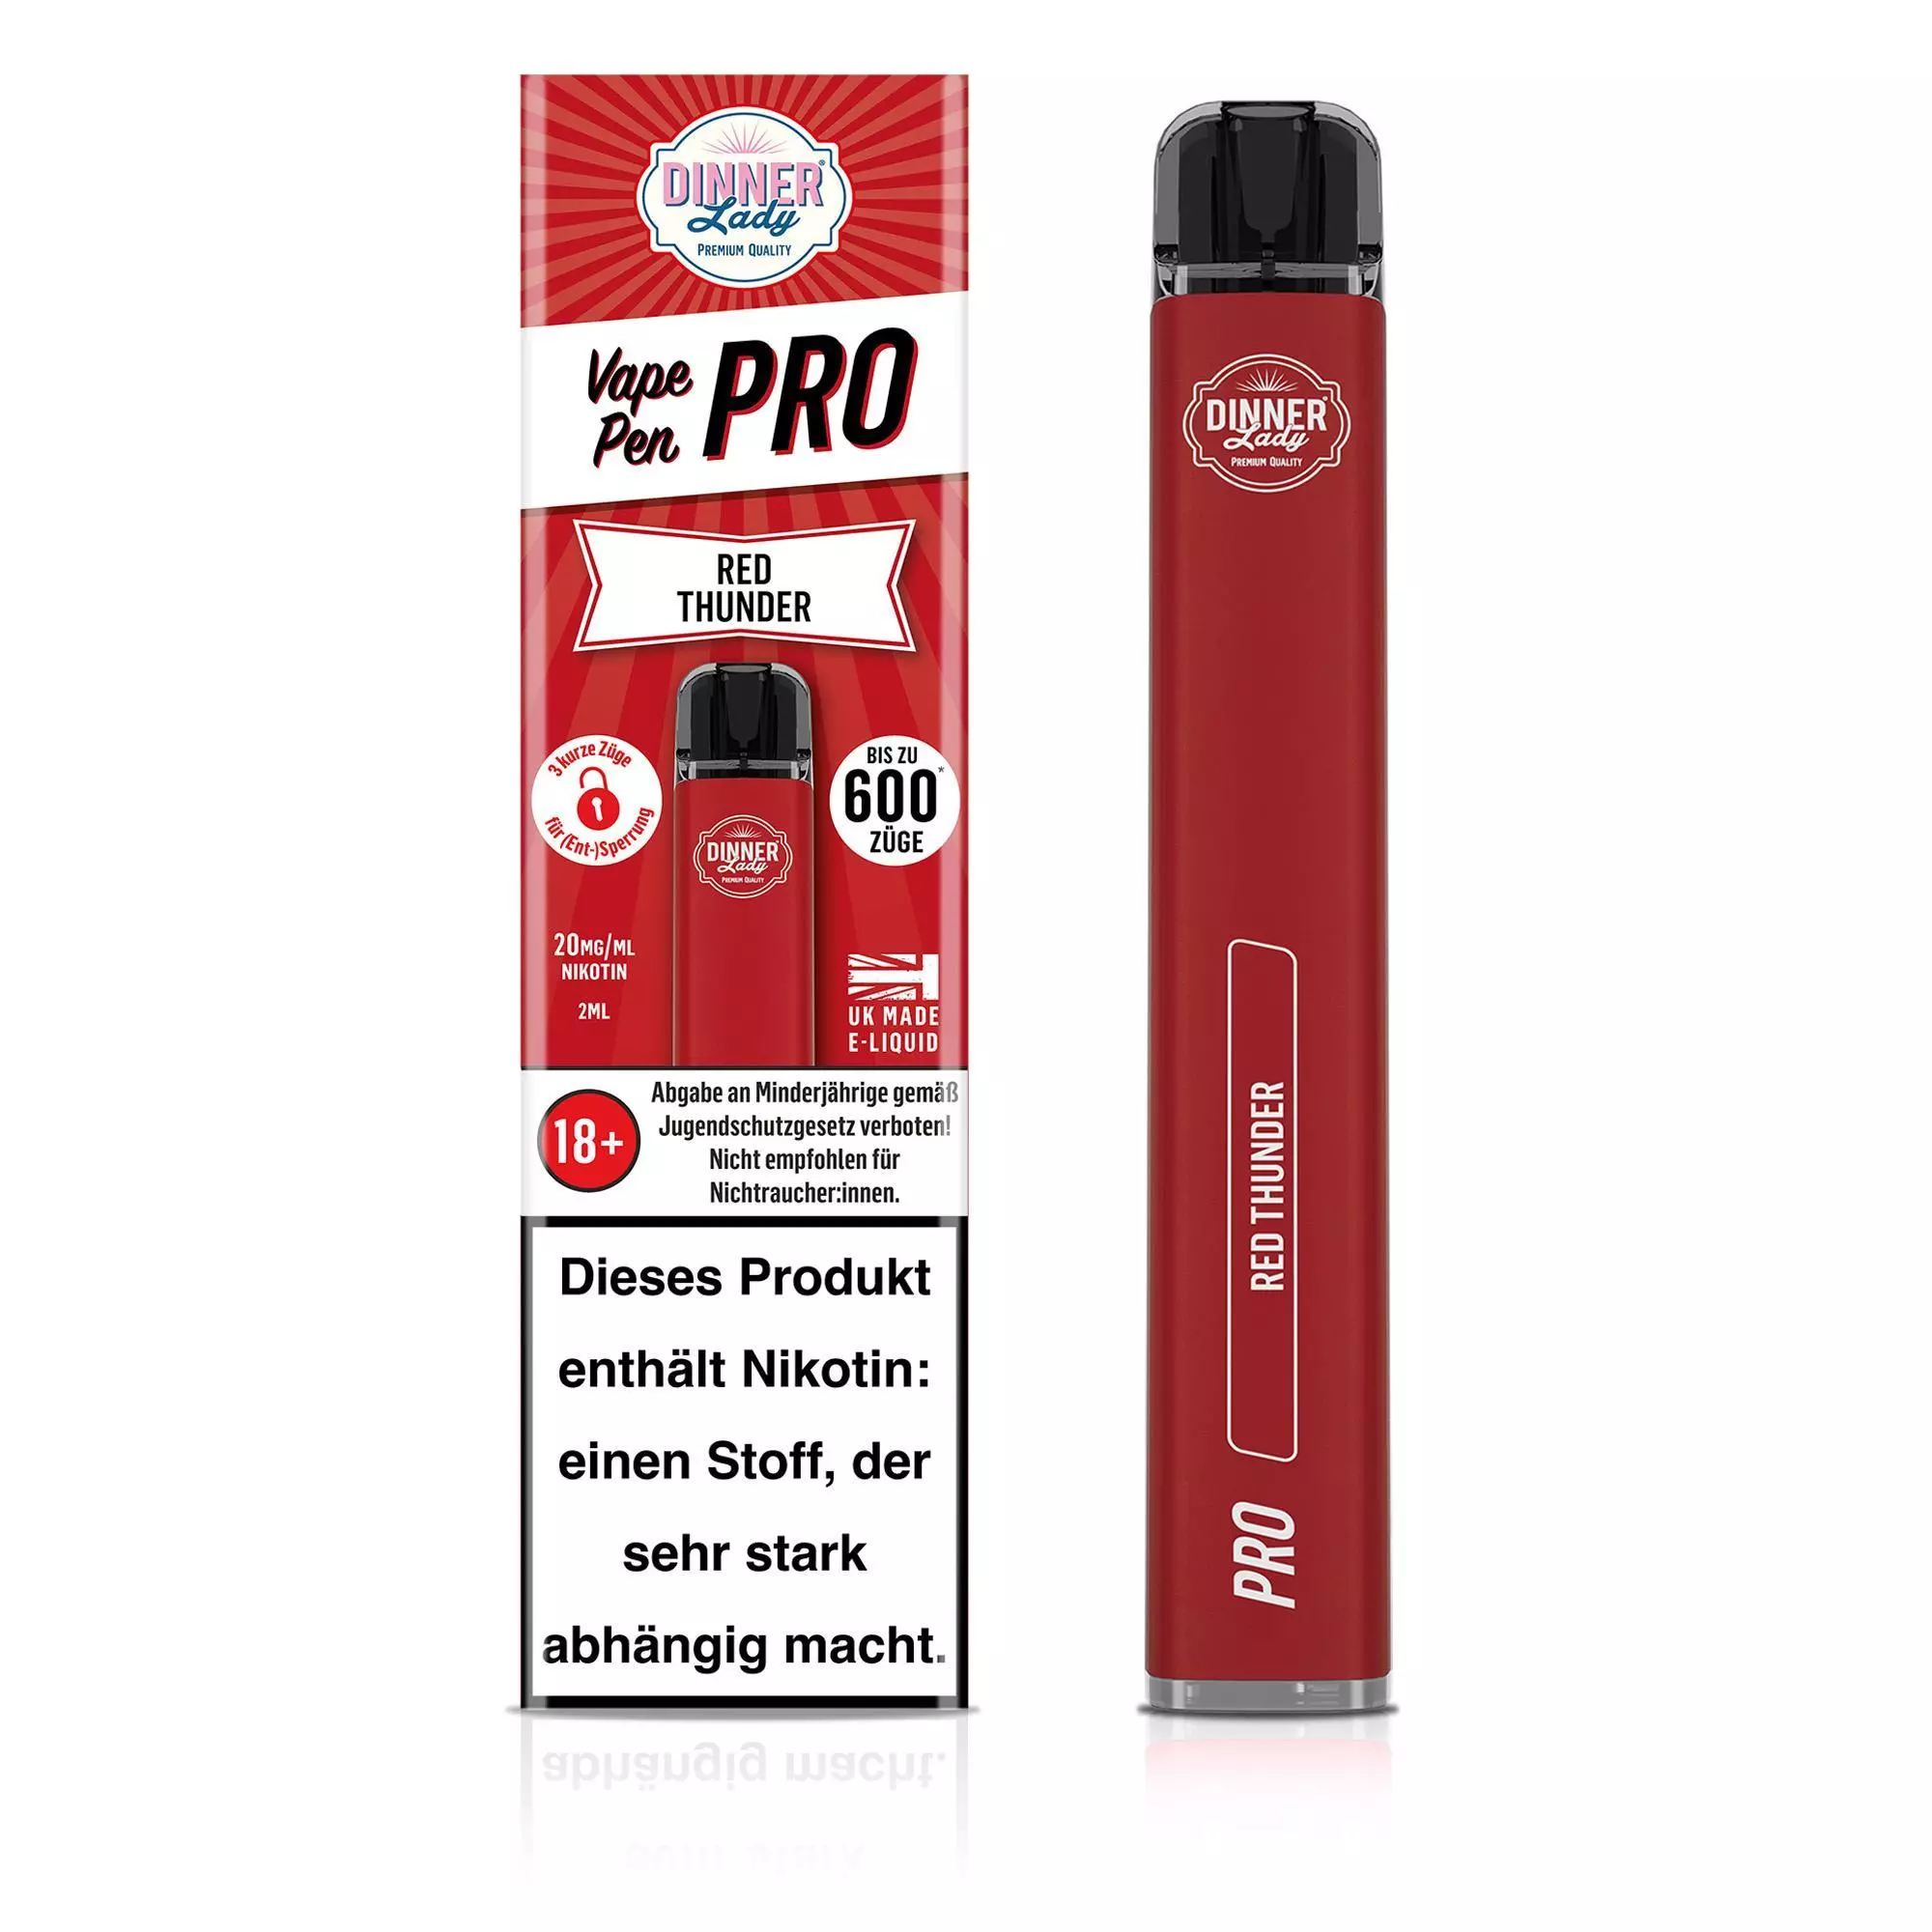 D.Lady Vape Pen Pro Red Thunder 20mg/ml Nikotin